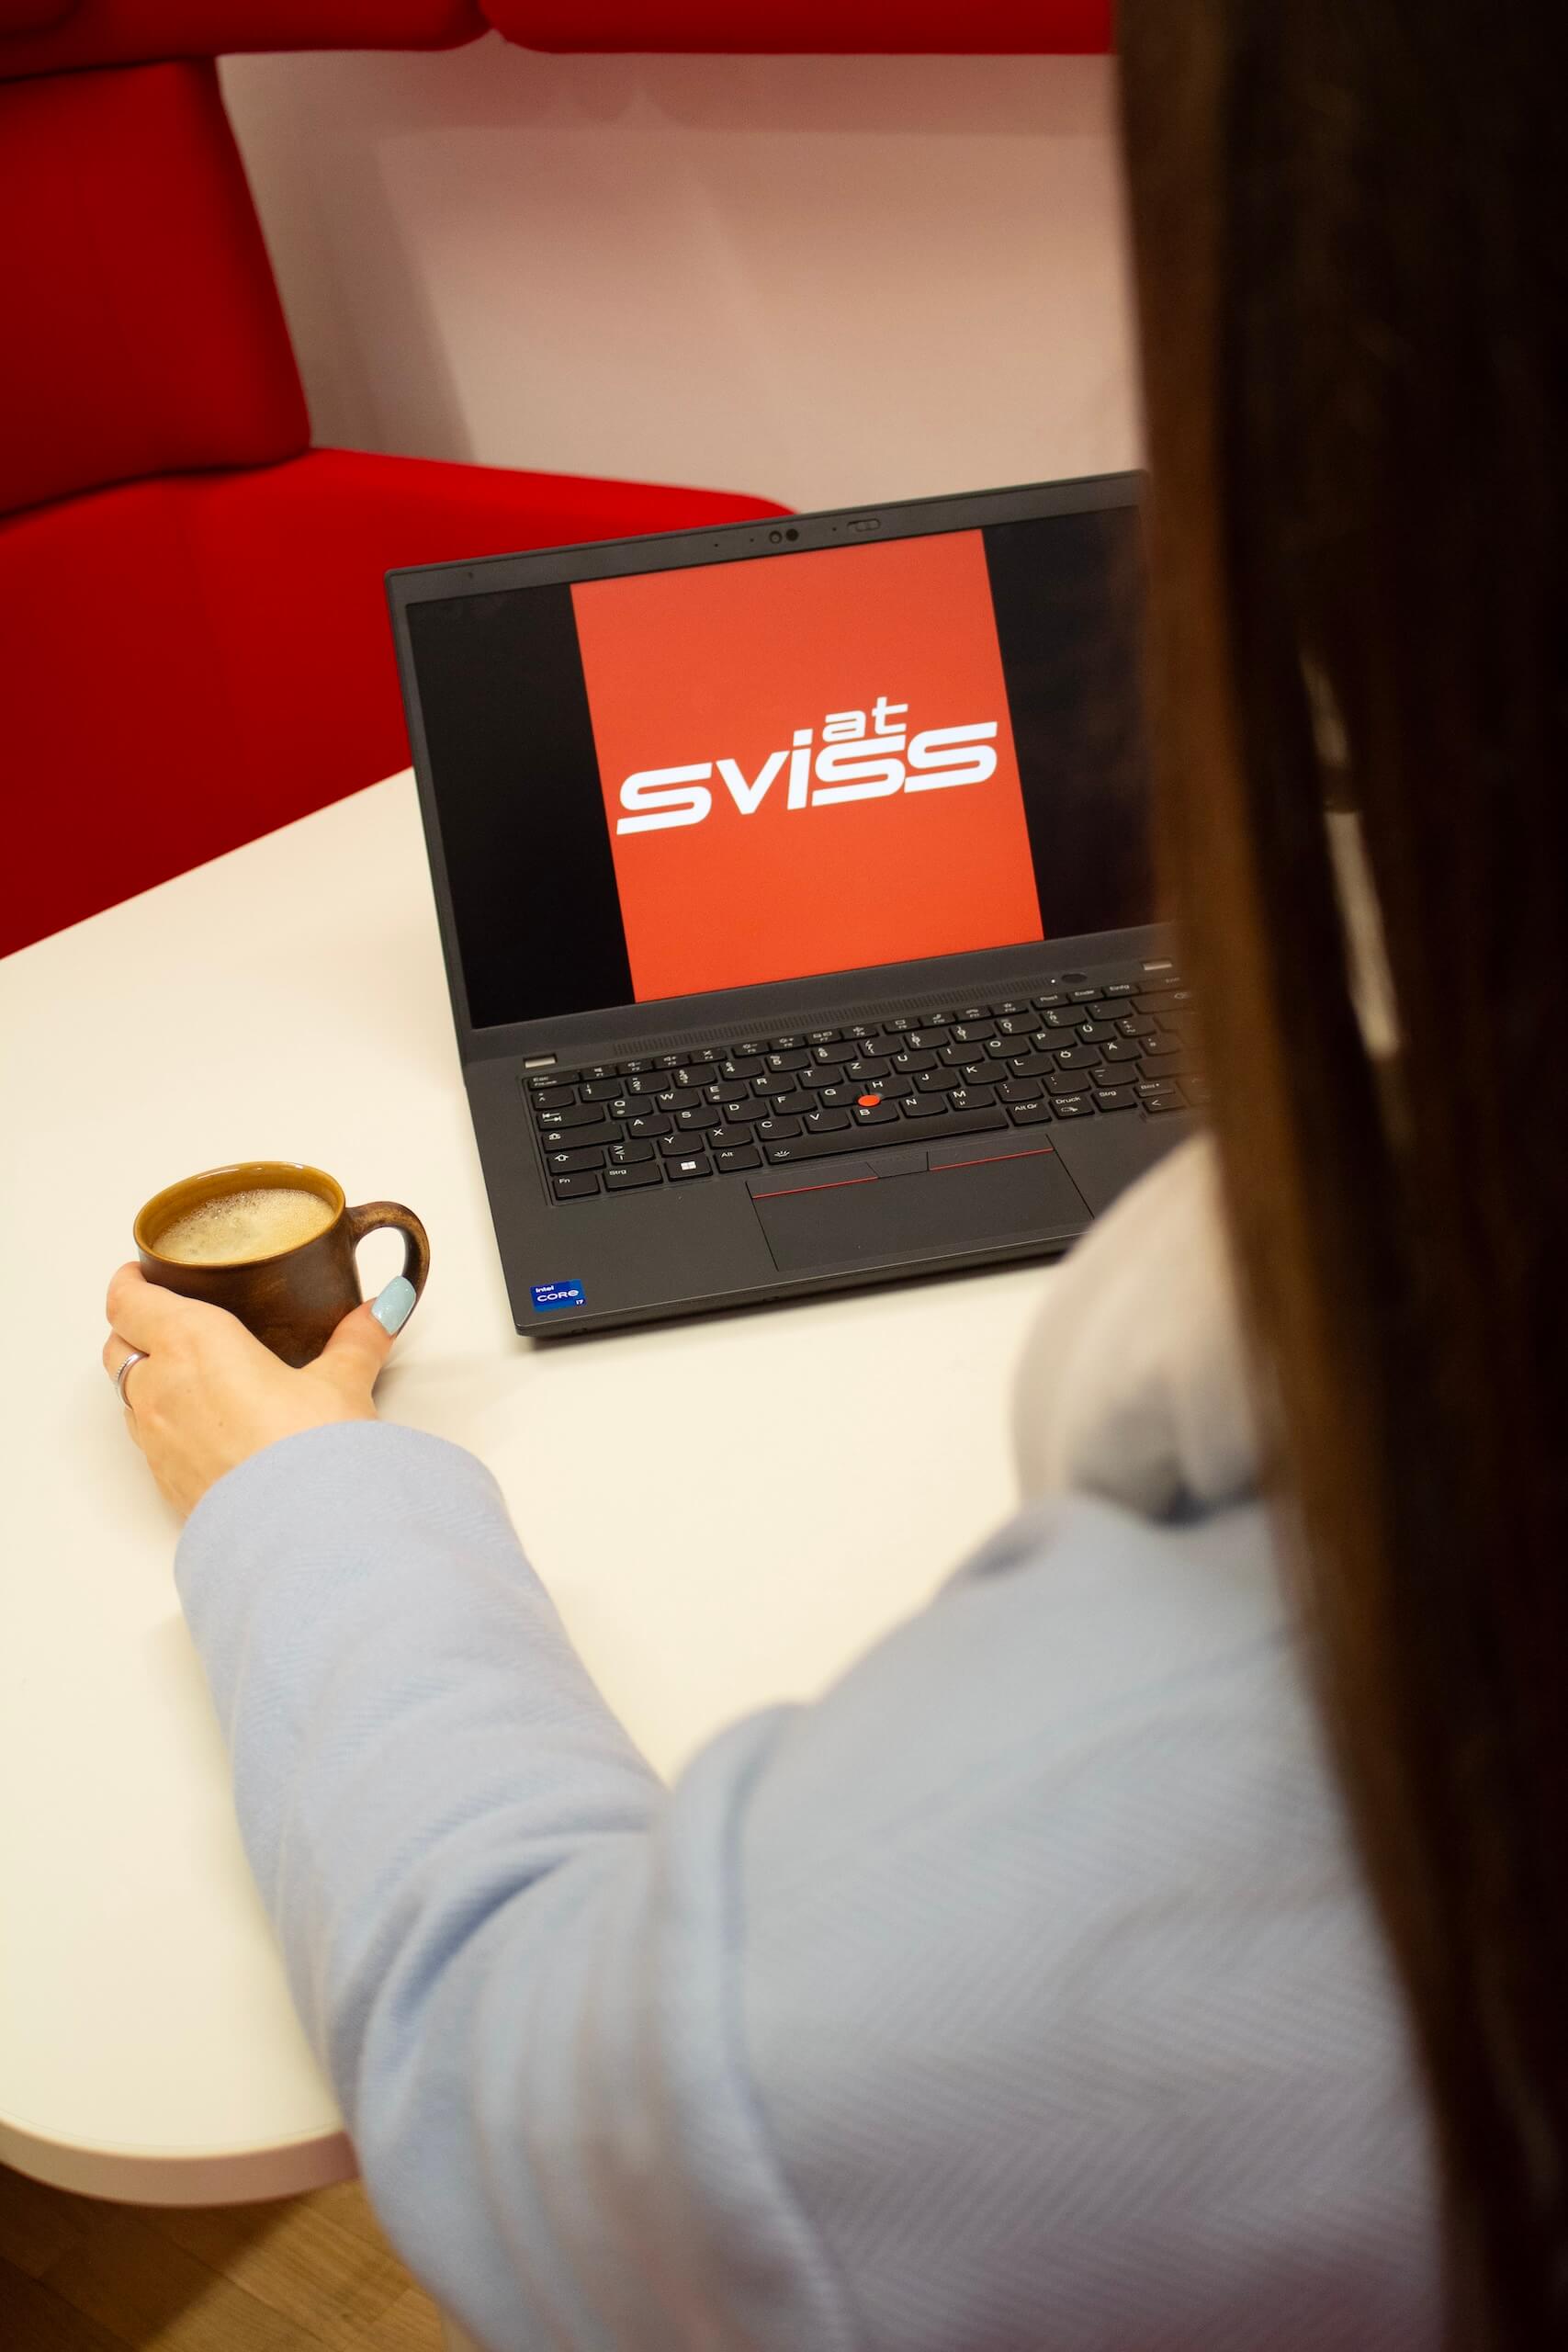 Frau sitzt vor einem Notebook mit Sviss Logo am Bildschirm